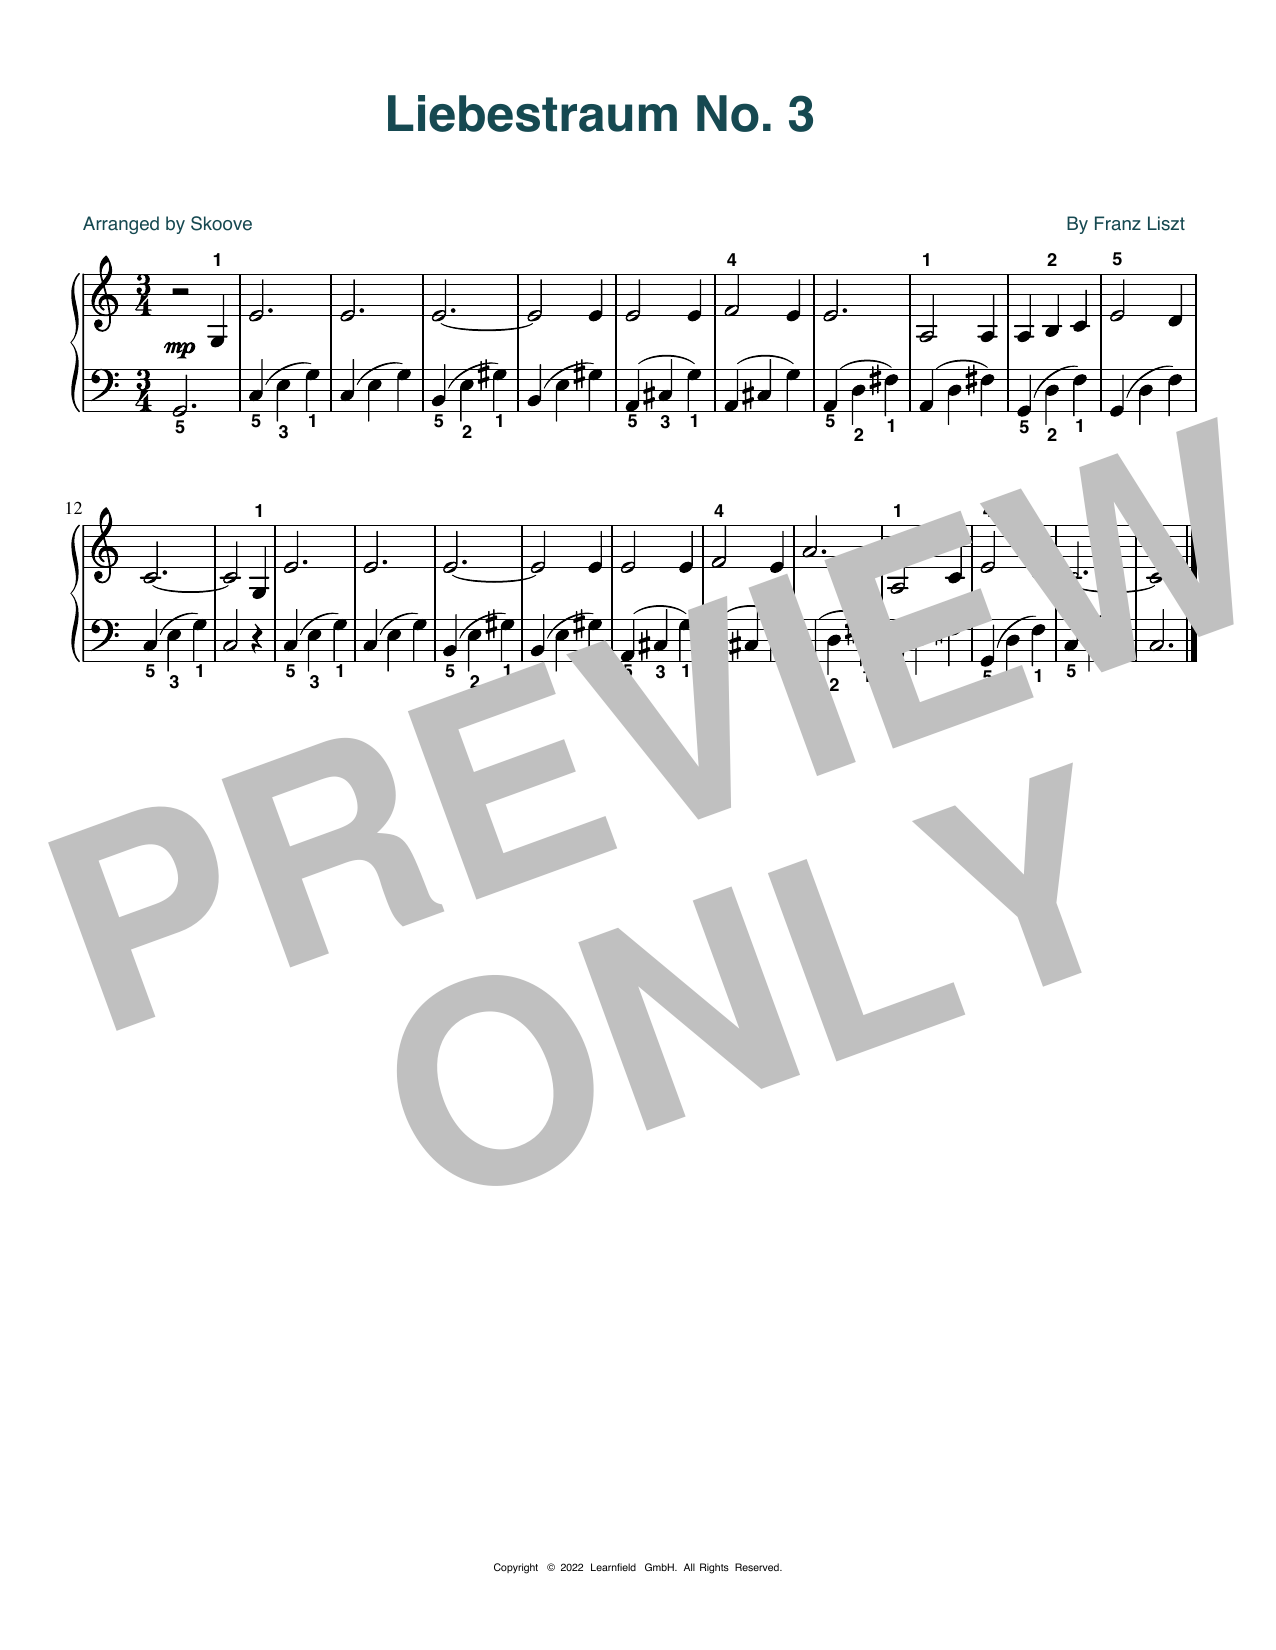 Download Franz Liszt Liebestraum No. 3 (arr. Skoove) Sheet Music